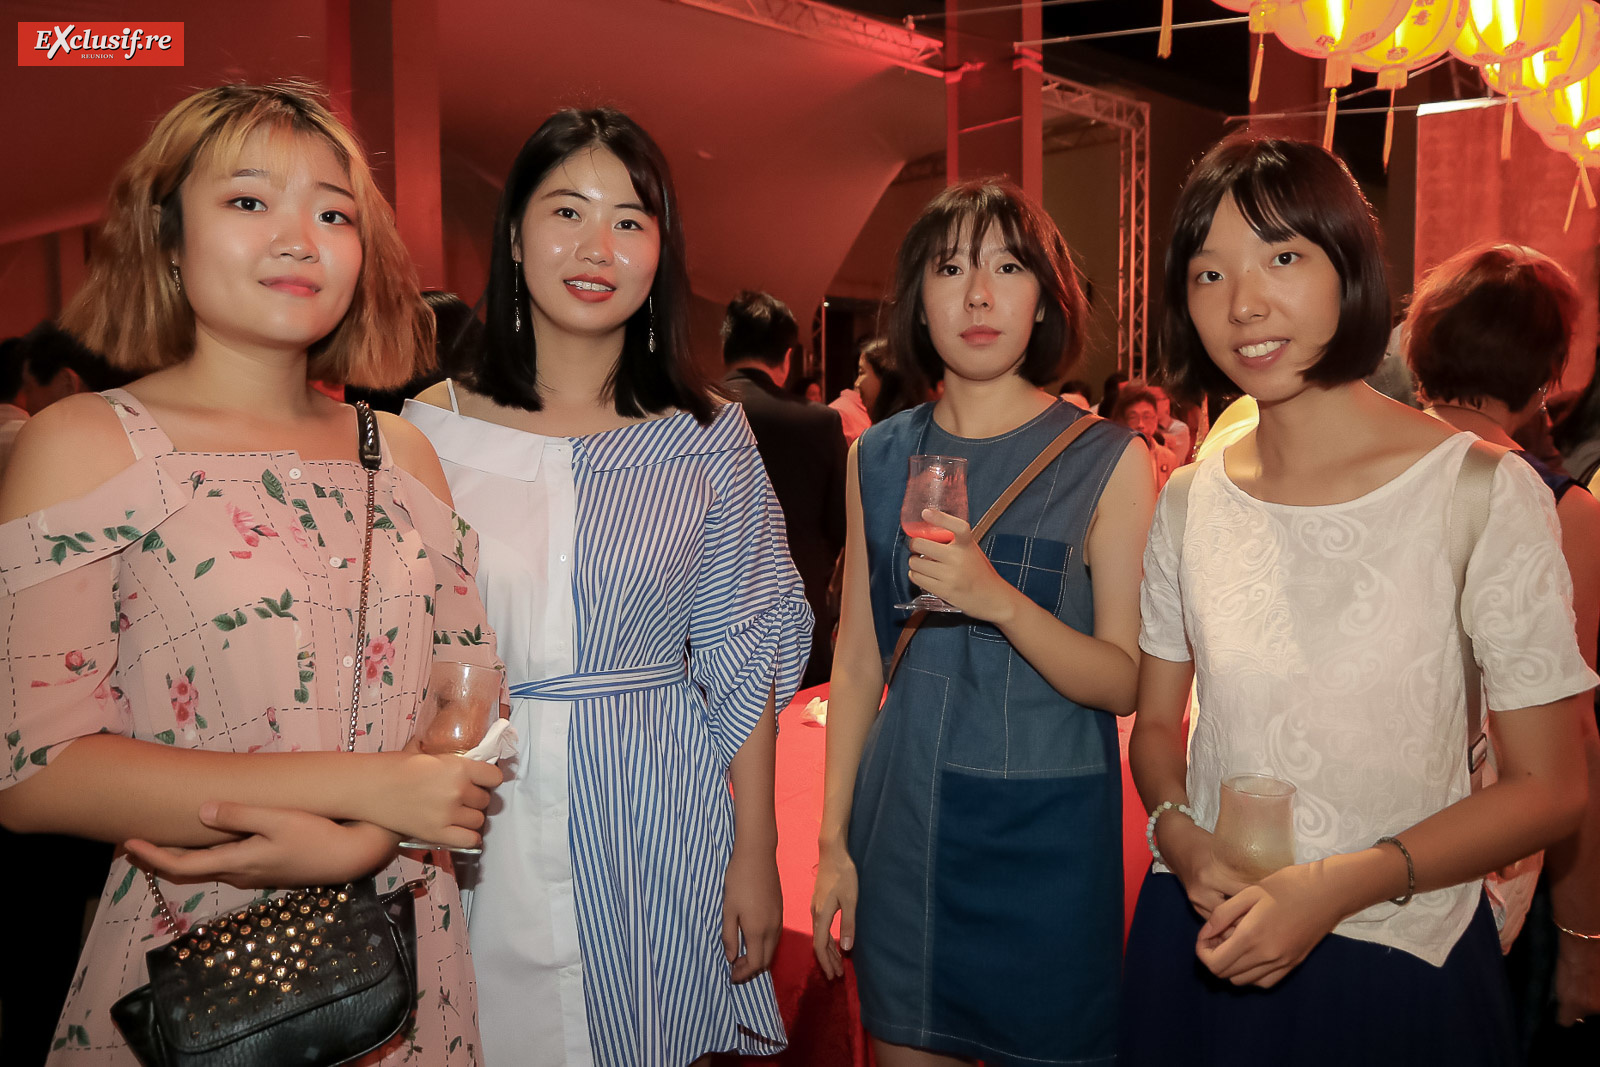 Les très jolies étudiantes chinoises de Tianjin inscrites à l’Université de La Réunion